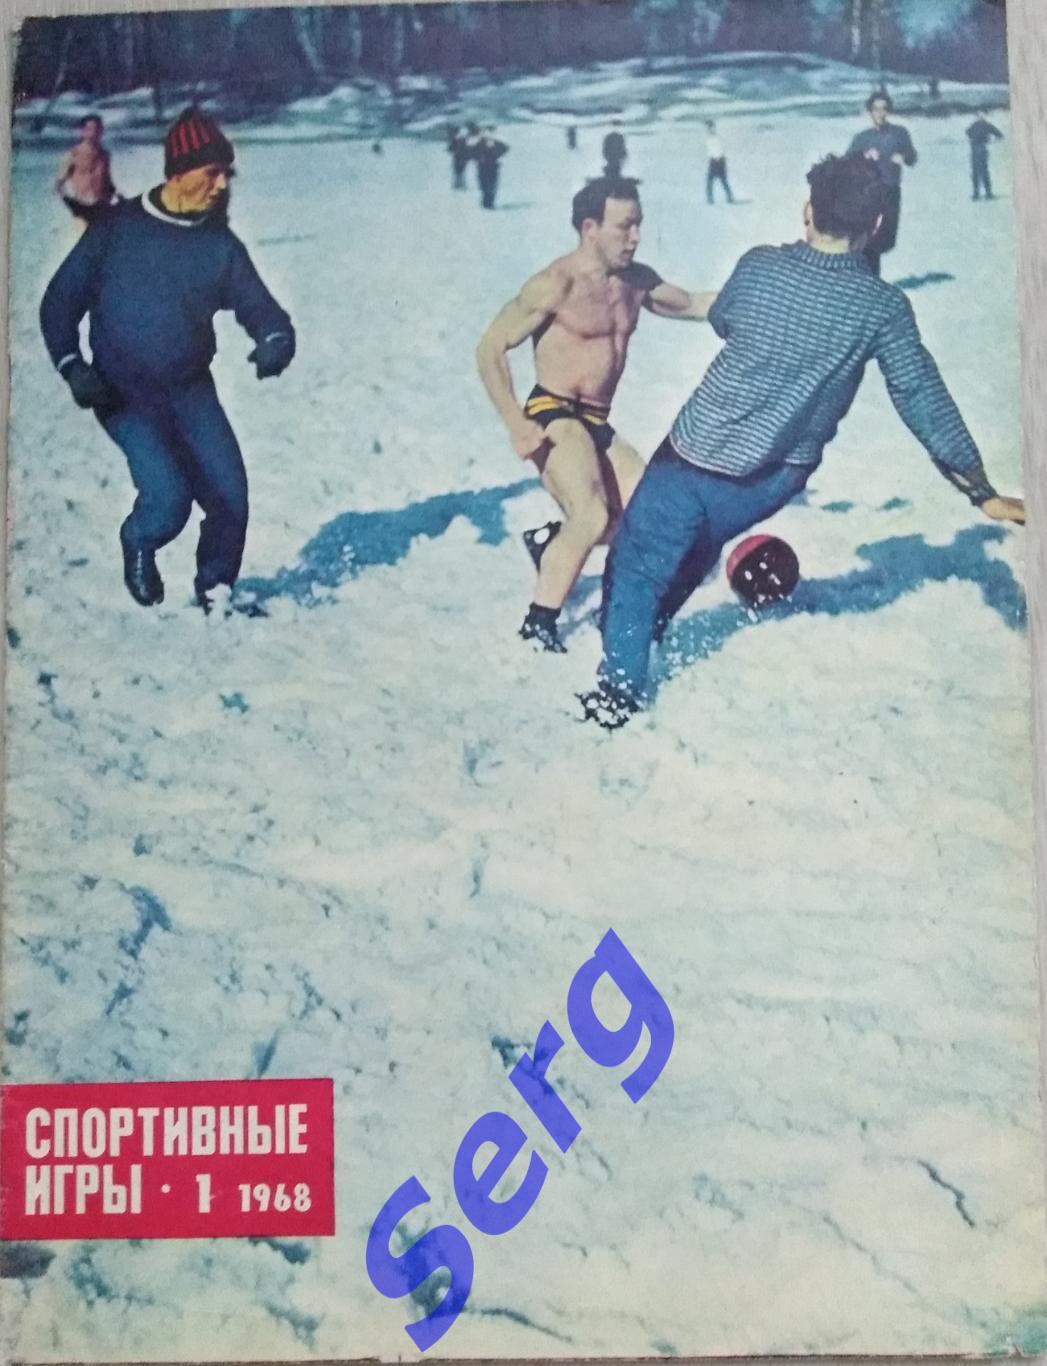 Журнал Спортивные игры №1 1968 год